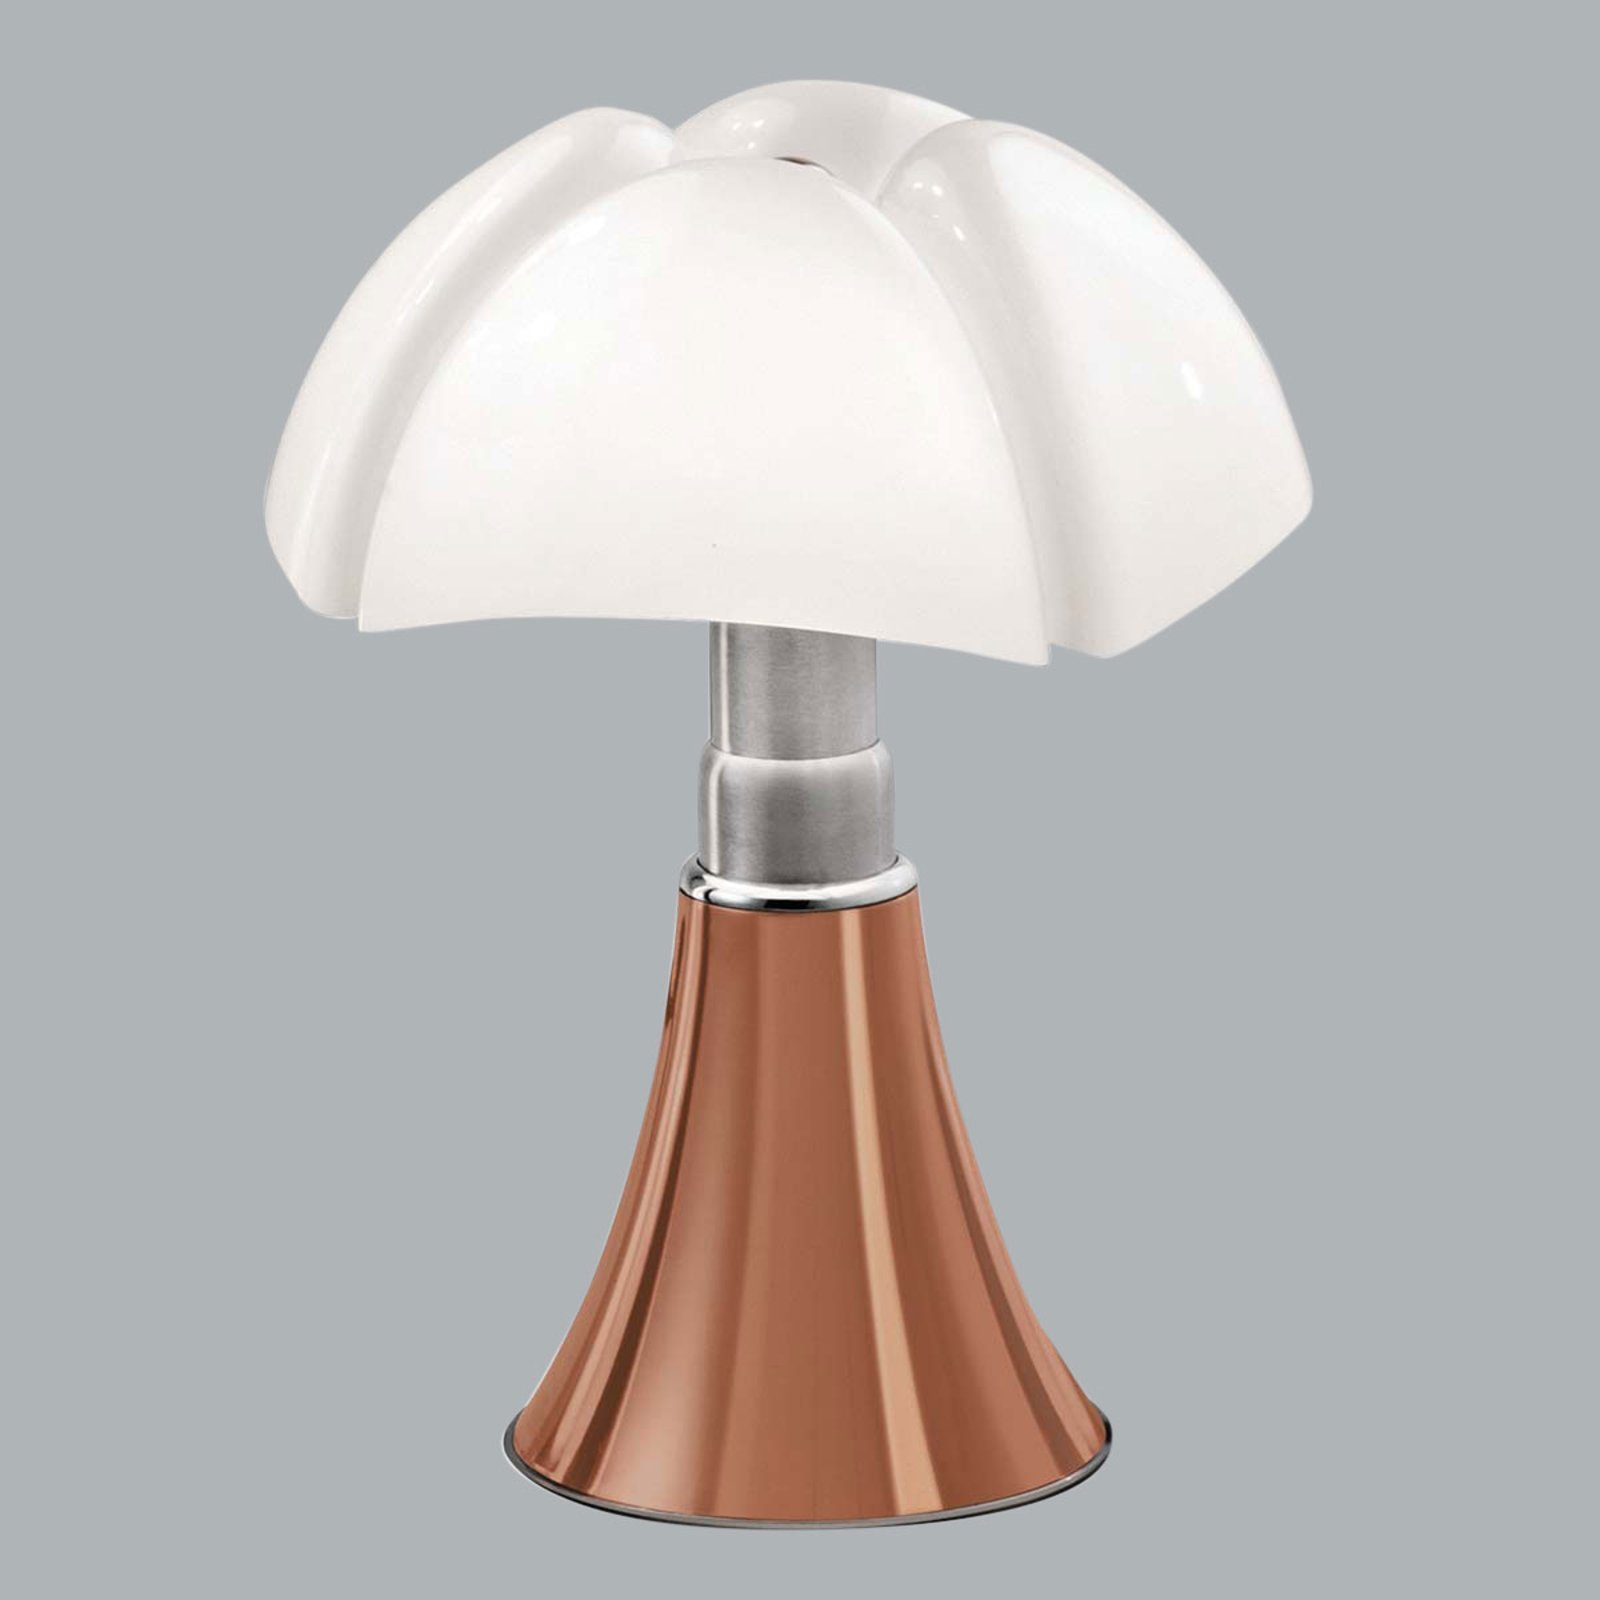 Martinelli Luce Minipipistrello lampe table cuivre